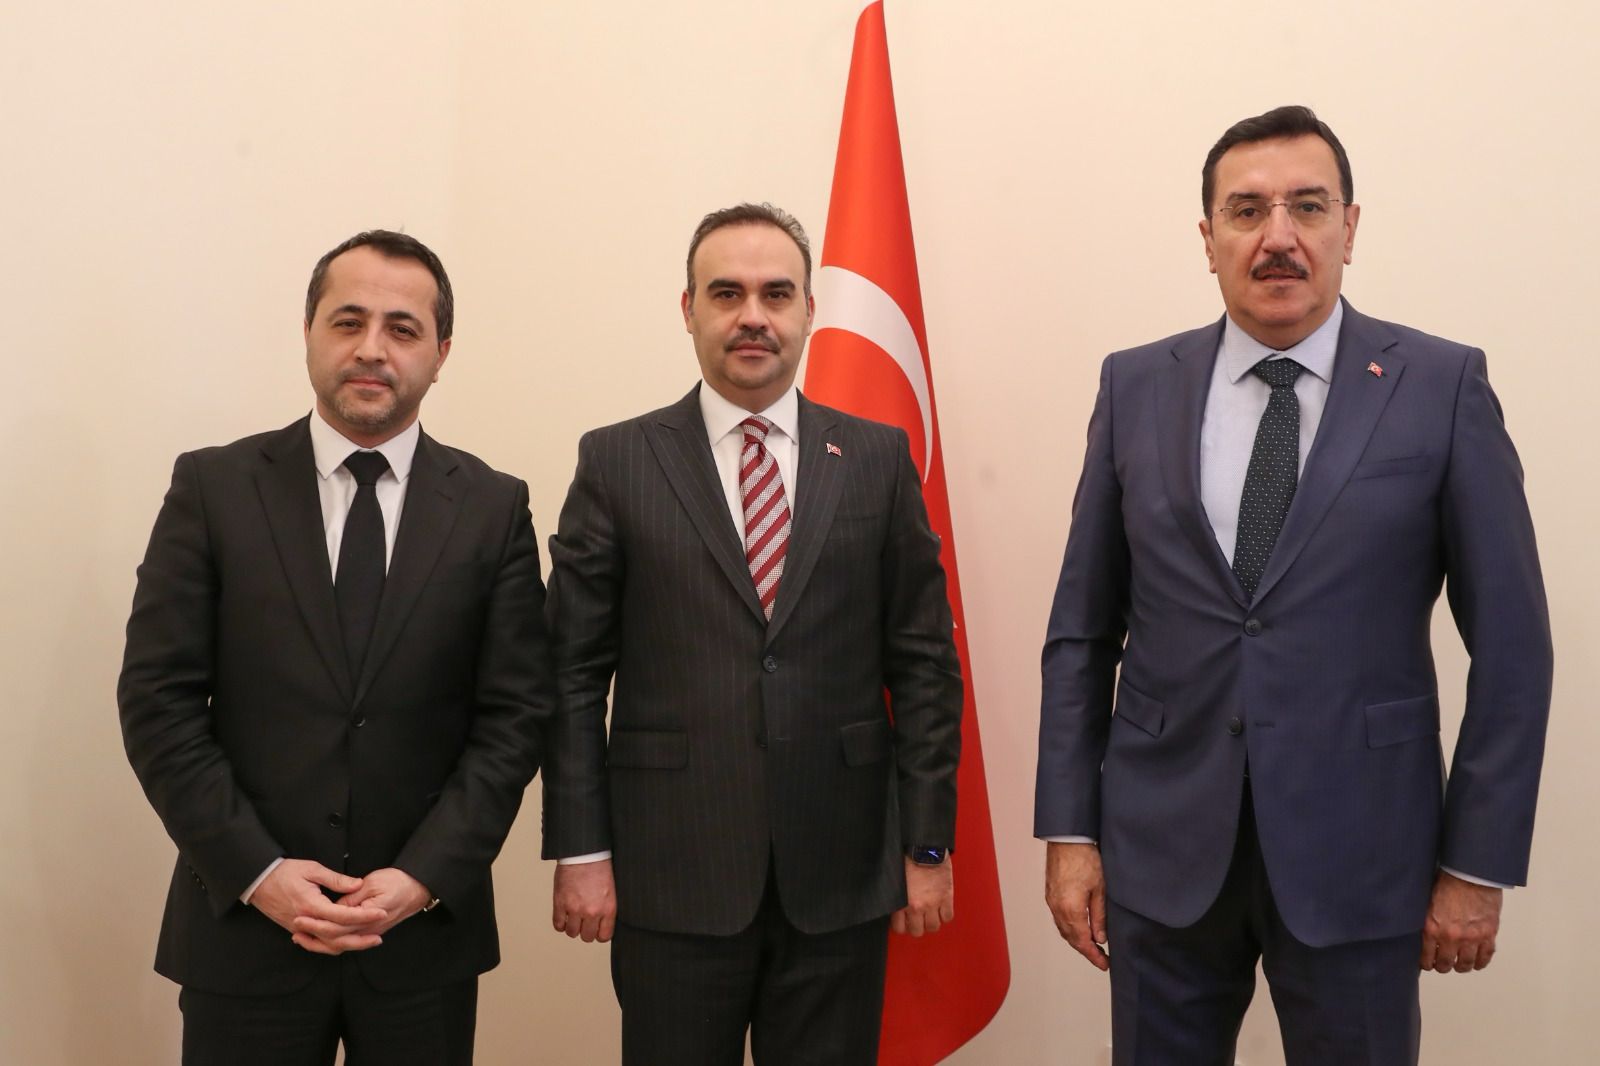 -Milletvekili Tüfenkci: “Sanayi Bakanımızla Malatya’nın taleplerini konuştuk”